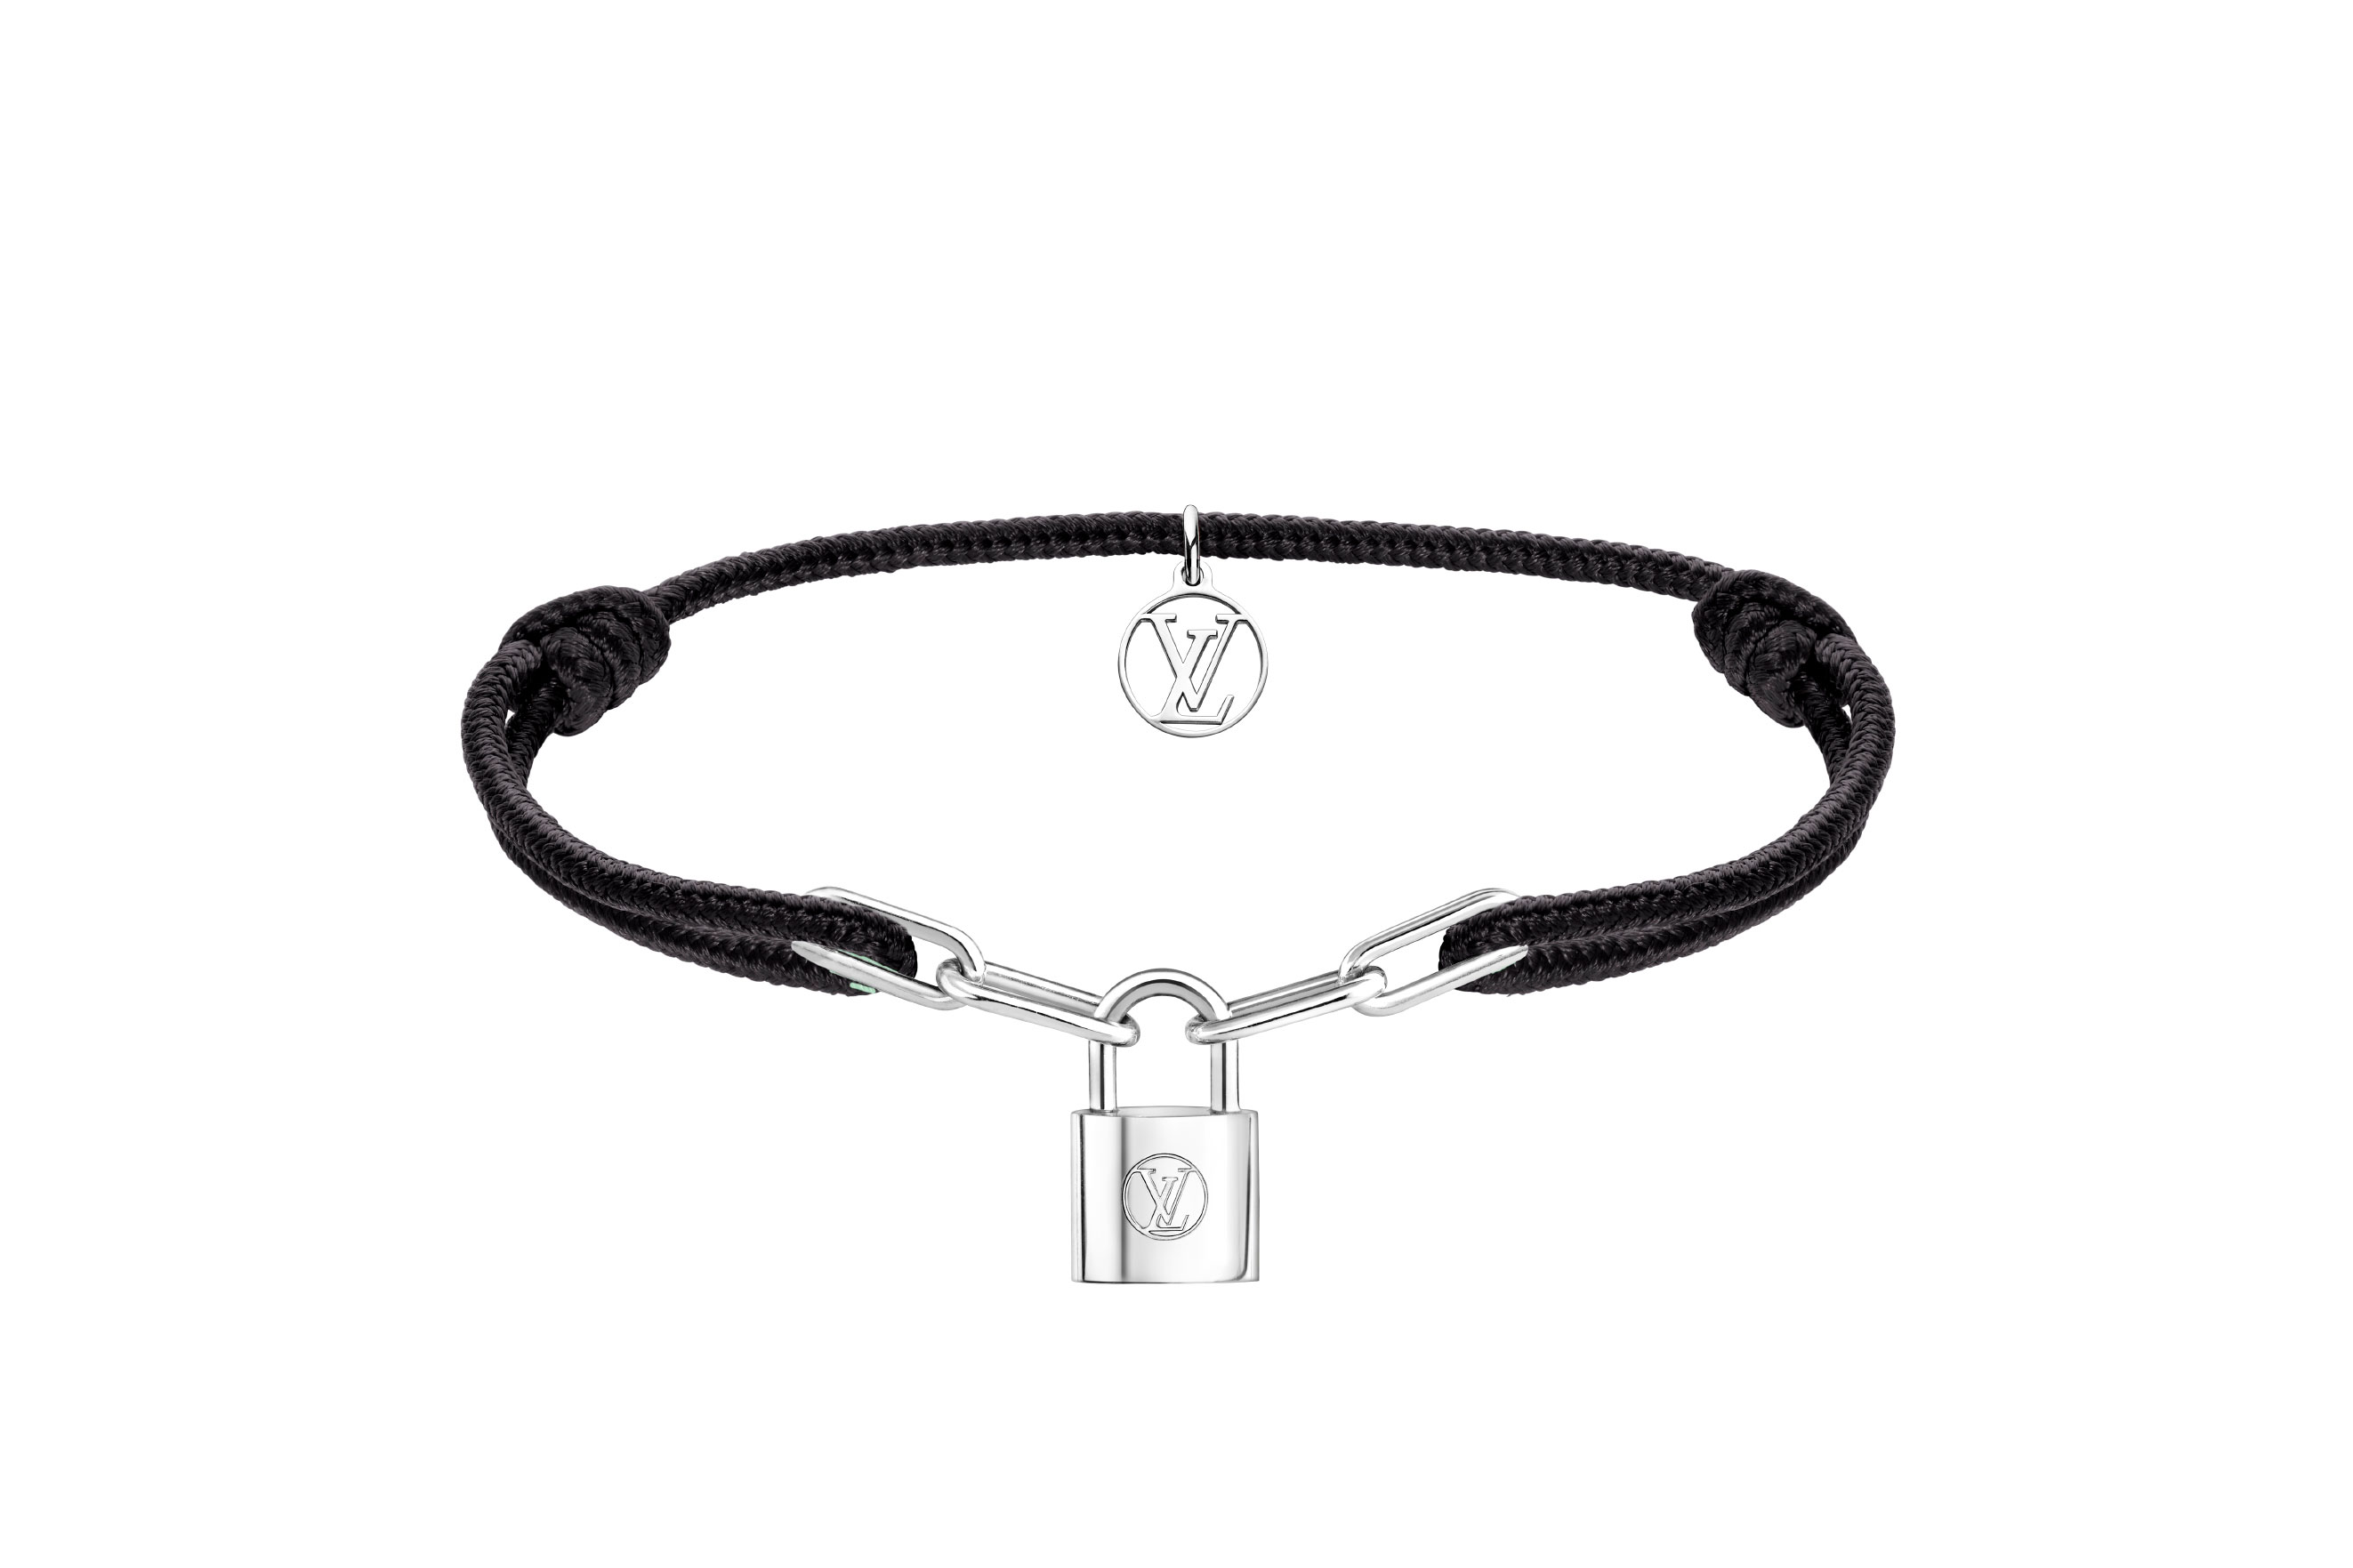 Virgil Abloh's Designs New Silver Bracelets for Louis Vuitton x UNICEF